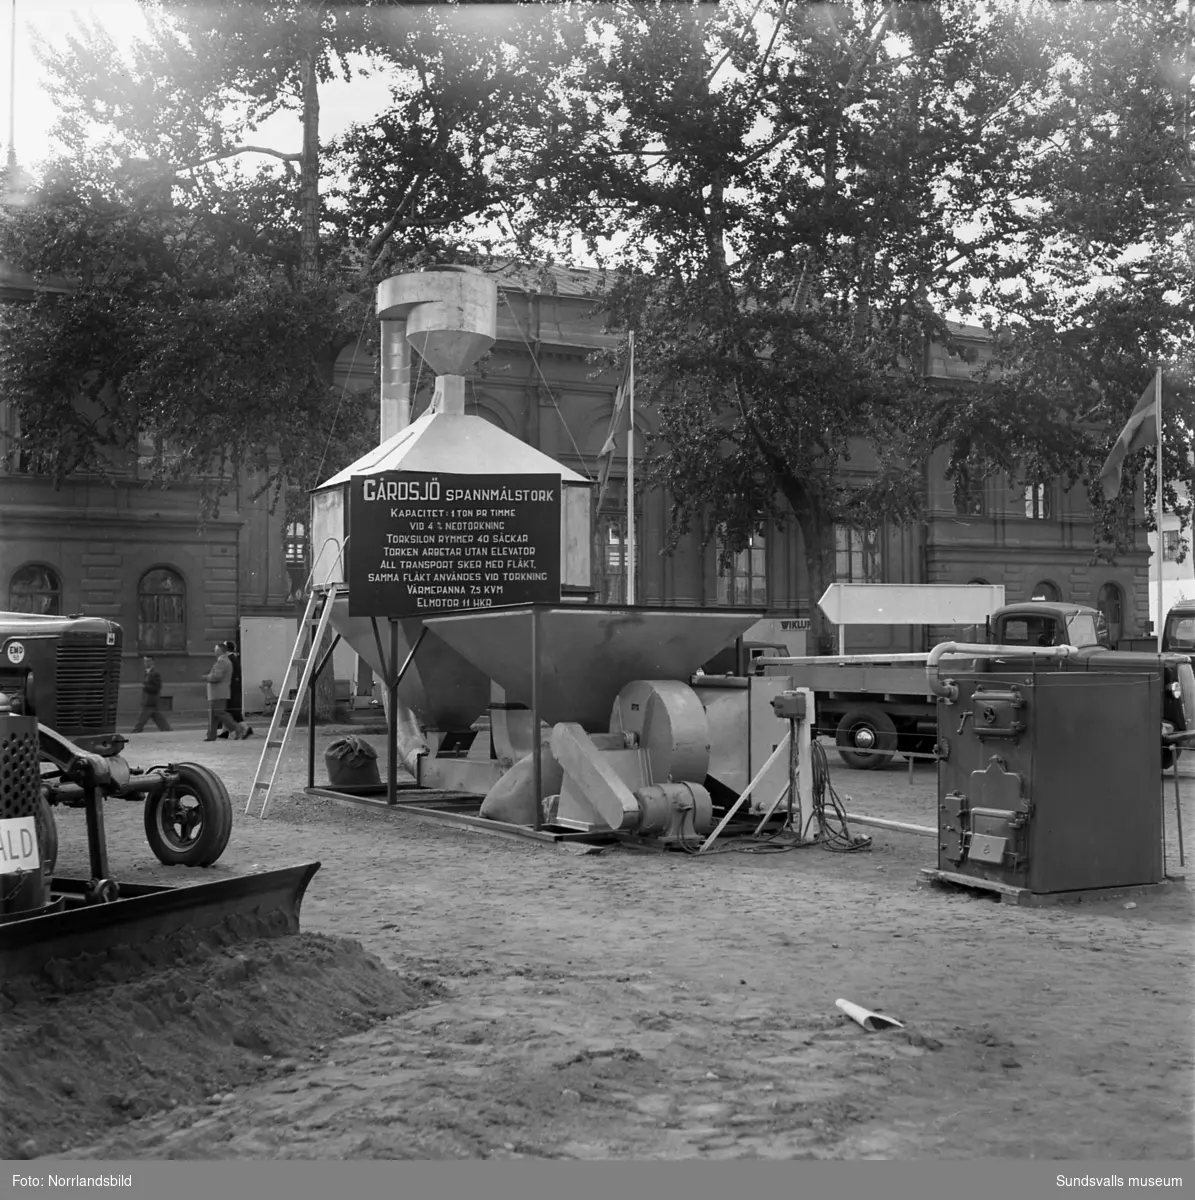 Mela, jordbruksmaskiner och stängsel, monter på Sundsvallsmässan 1954.